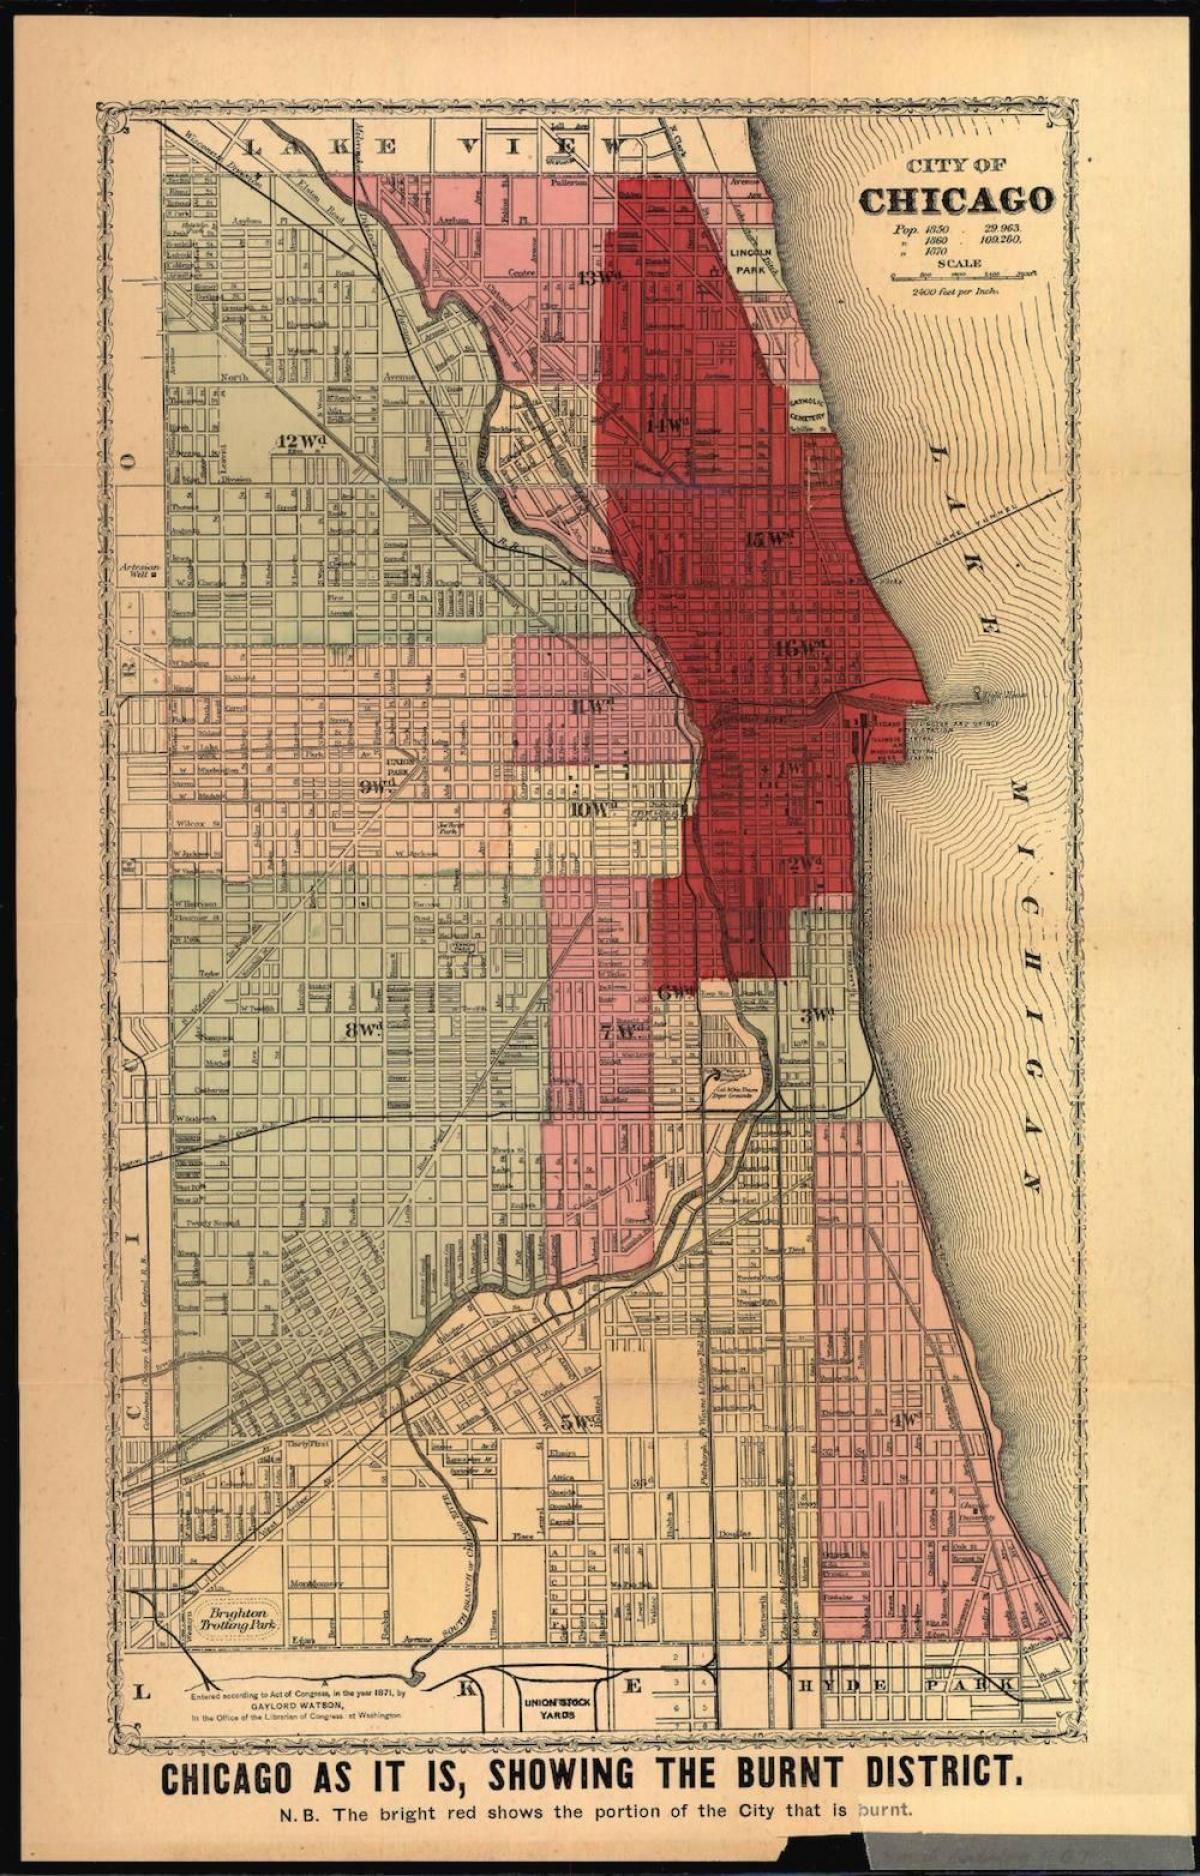 térkép a nagy Chicago fire